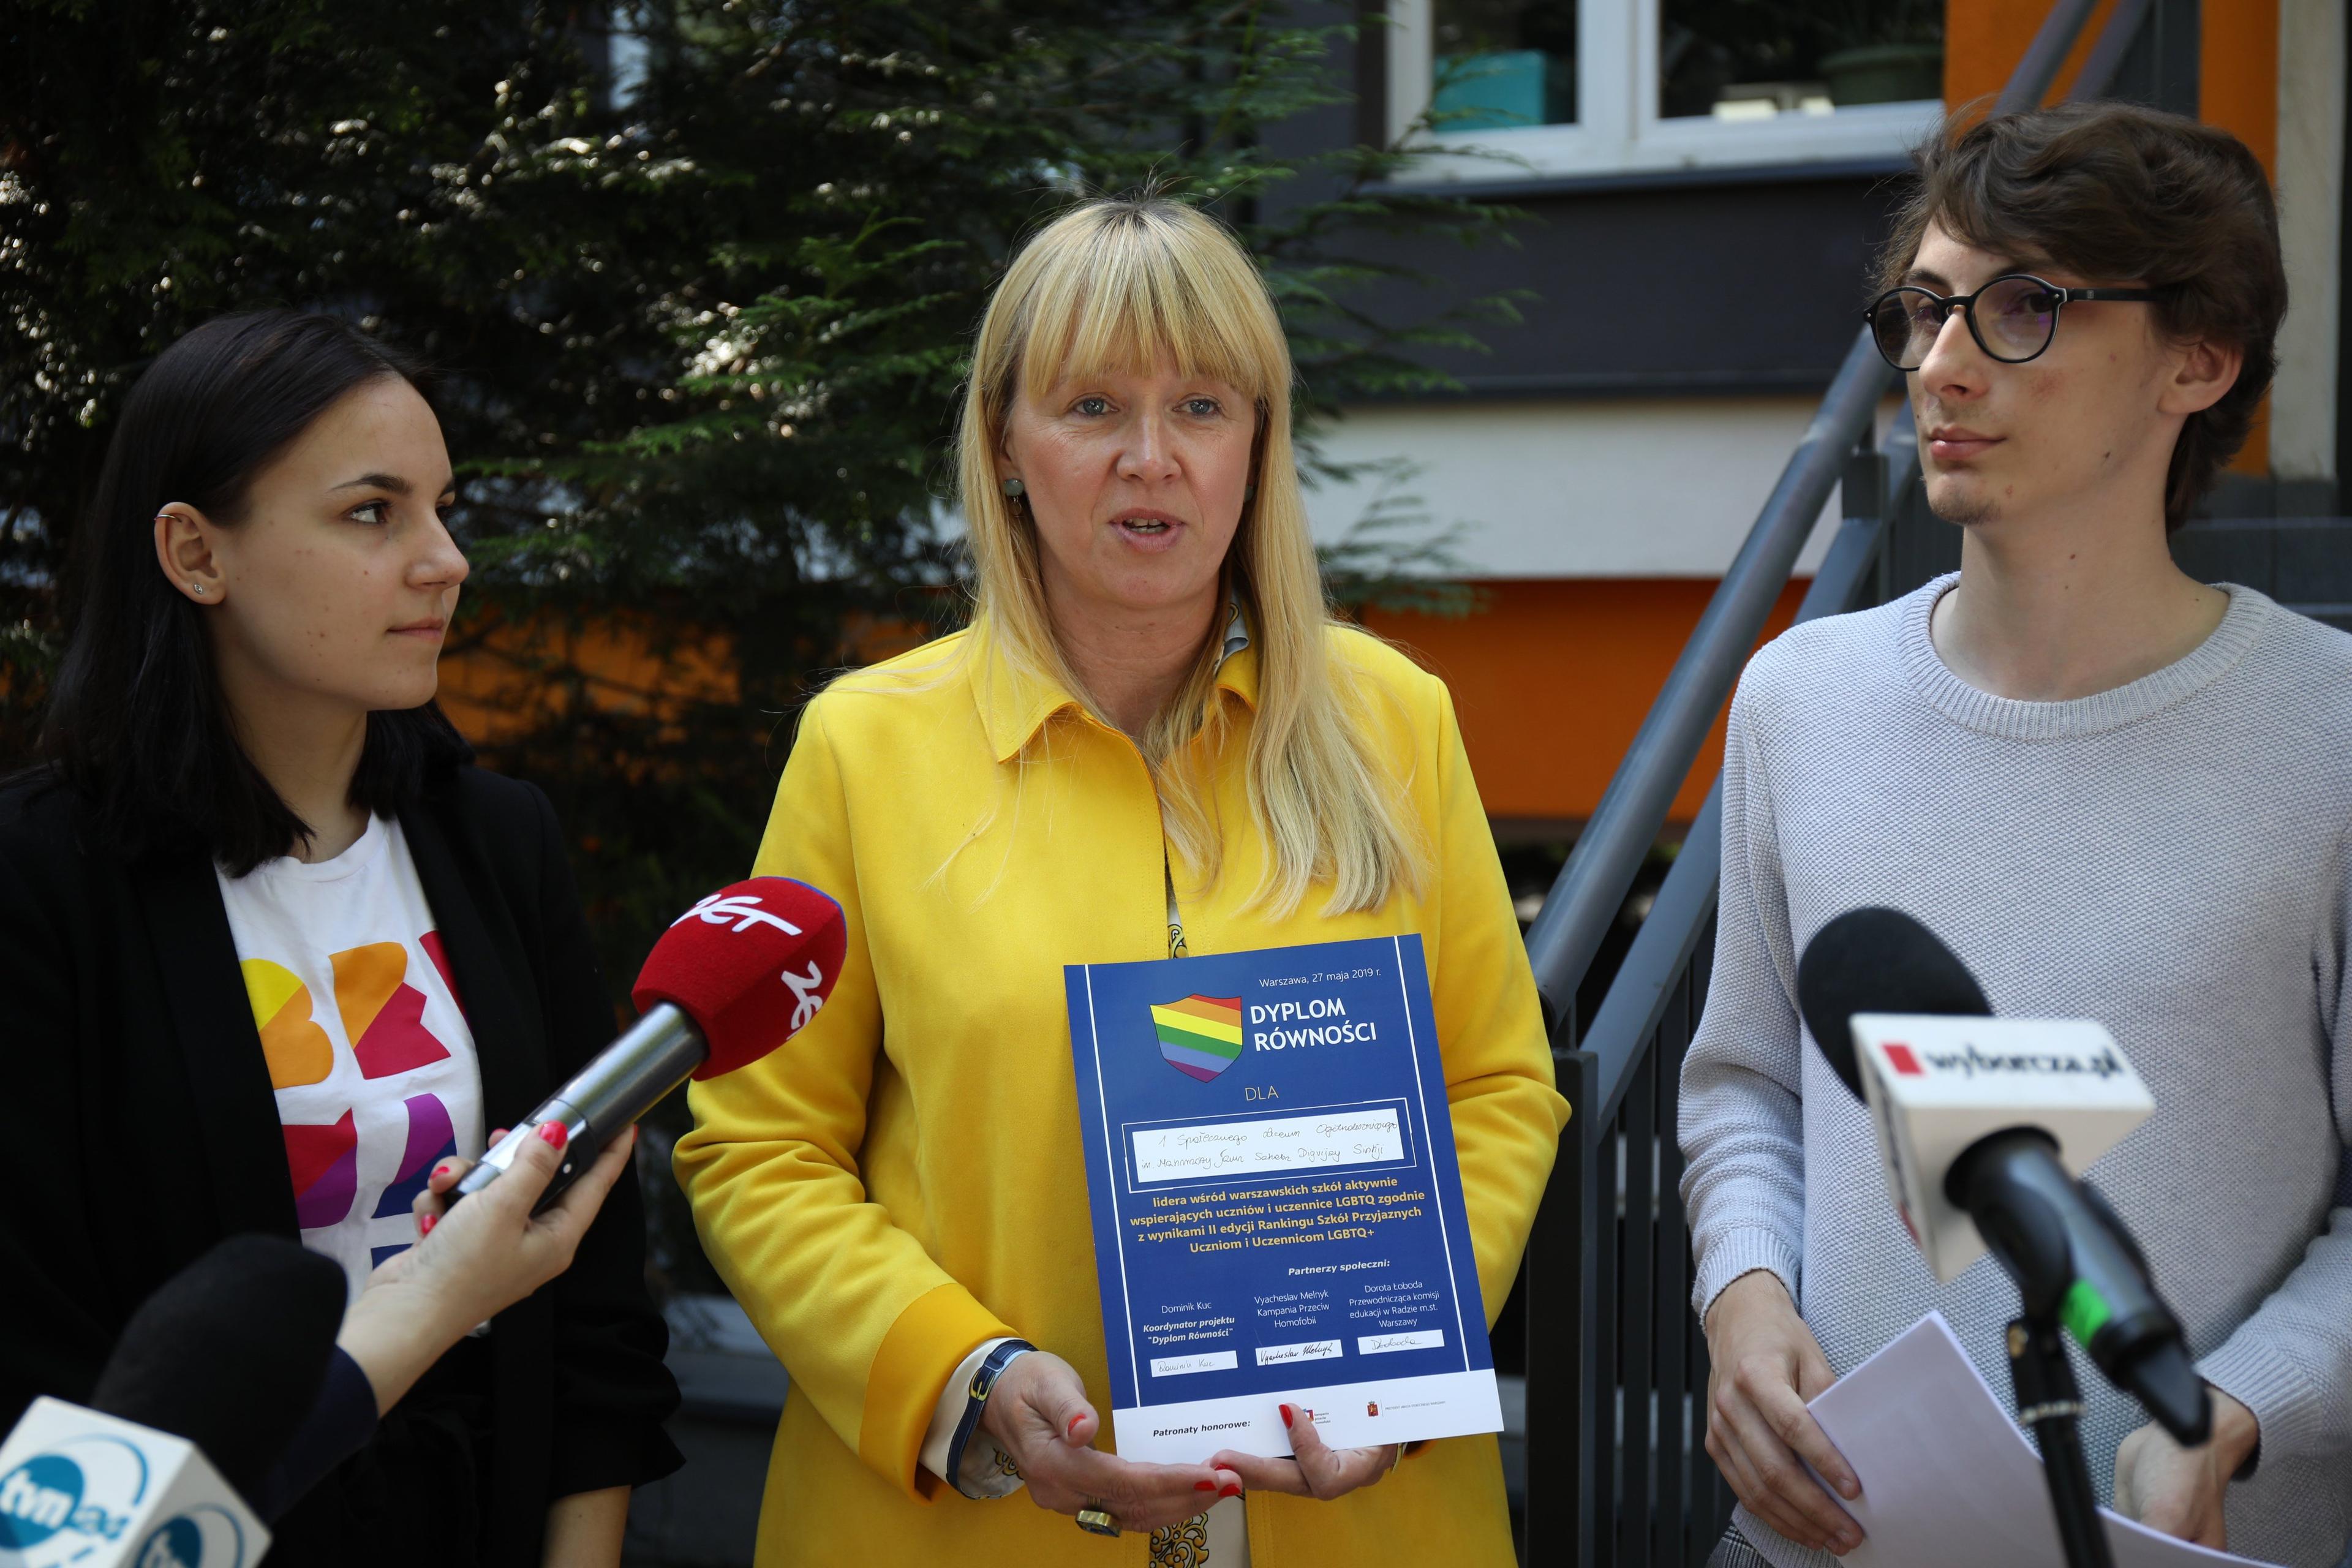 Na zdjęciu dyrektorka ISLO "Bednarska" w Warszawie odbierająca dyplom za przyjazność uczniom LGBT+